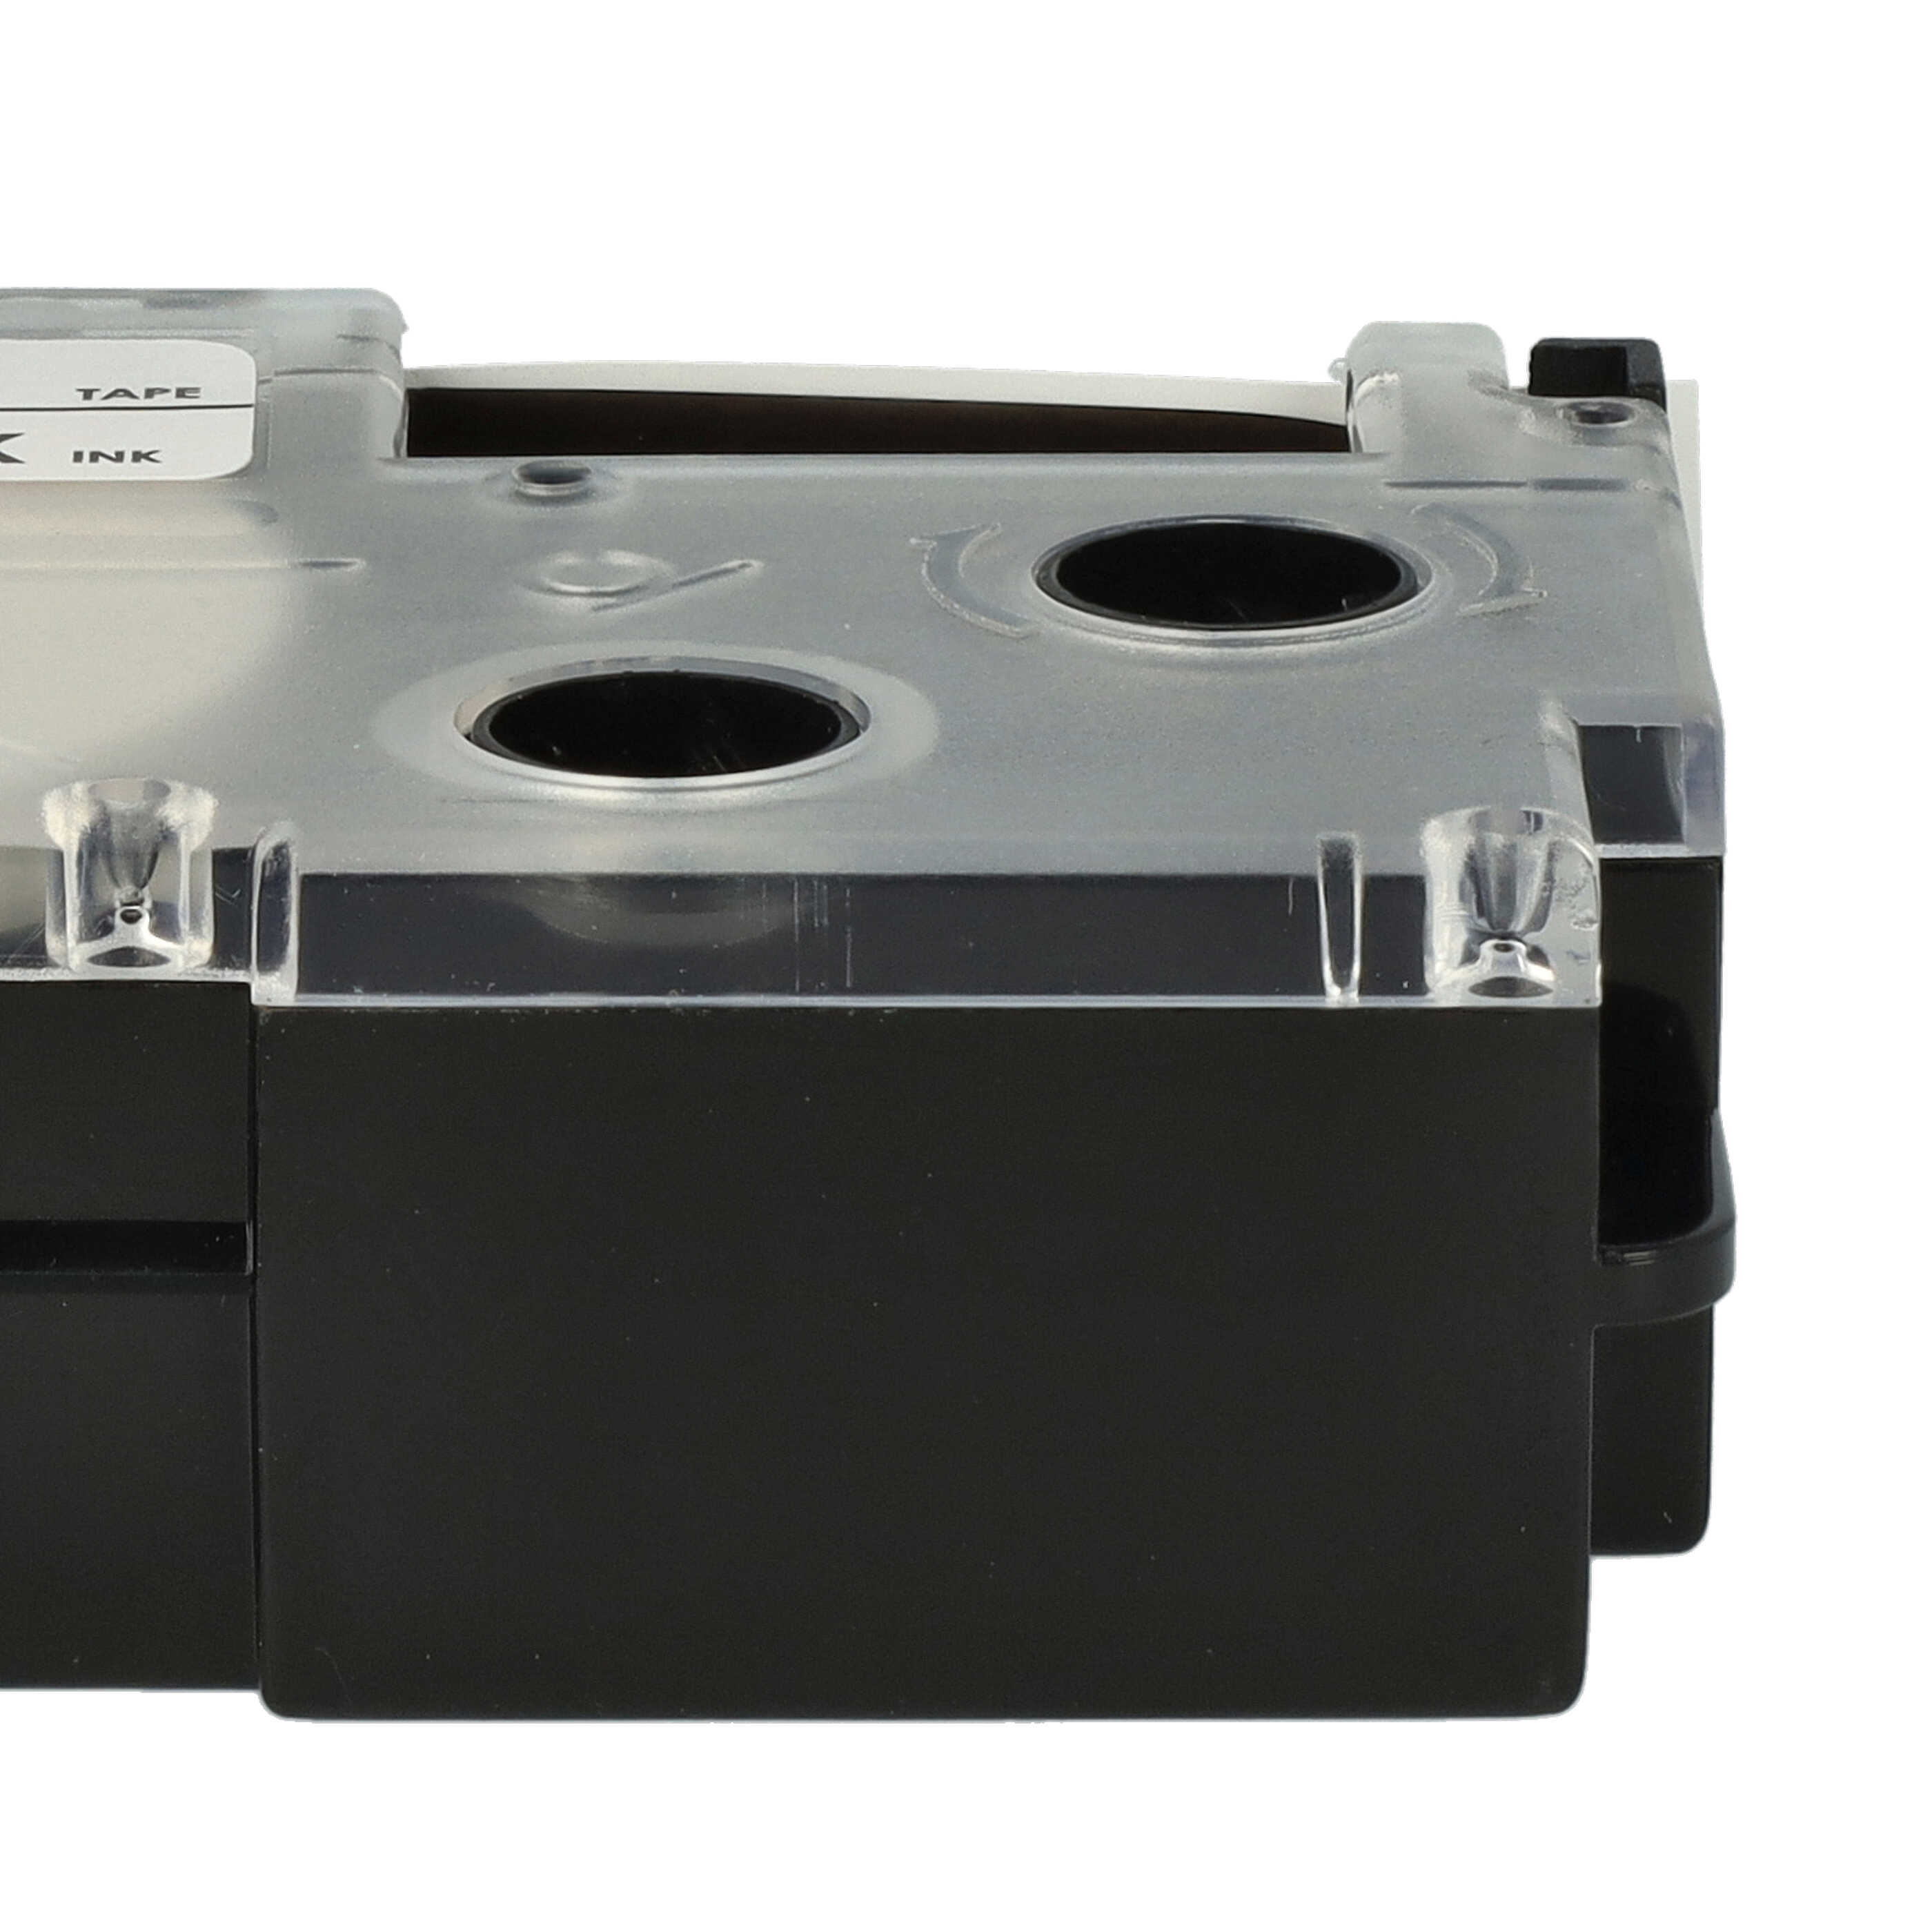 10x Cassettes à ruban remplacent Casio XR-18WE, XR-18WE1 - 18mm lettrage Noir ruban Blanc